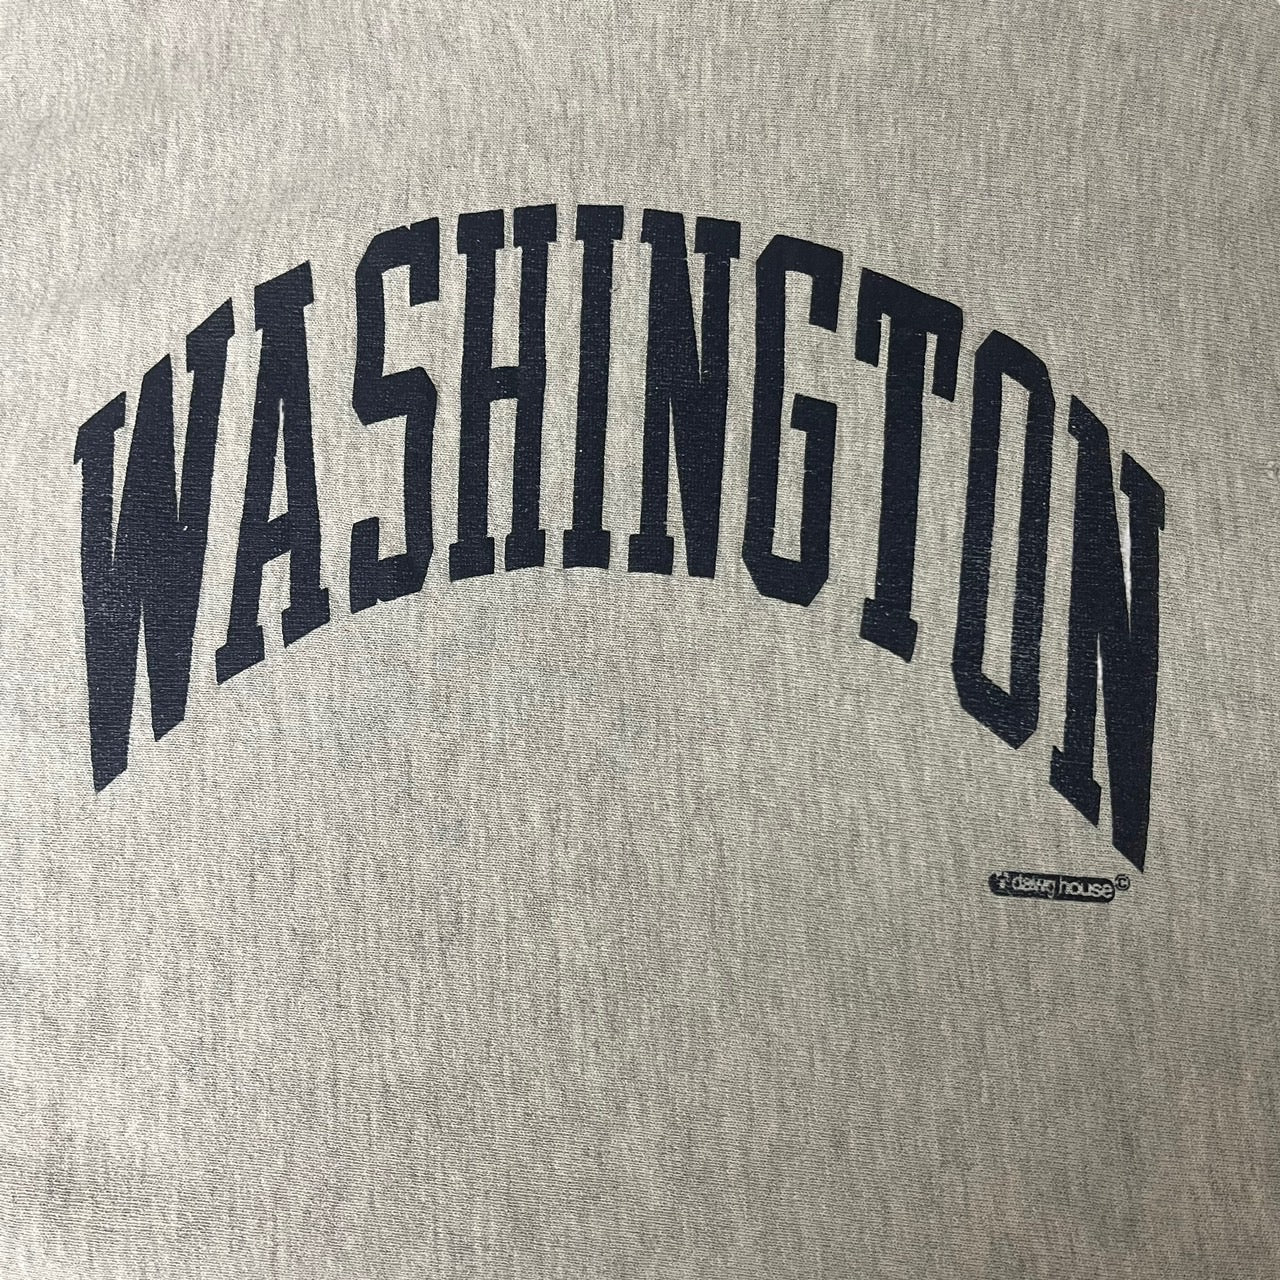 Champion(チャンピオン) 90's”WASHINGTON”REVERSE WAVE sweat shirt/アーチロゴプリントリバースウィーブスウェット 表記無し(Mサイズ程度) ライトグレー 90年代/90s/USA製/ワシントン州